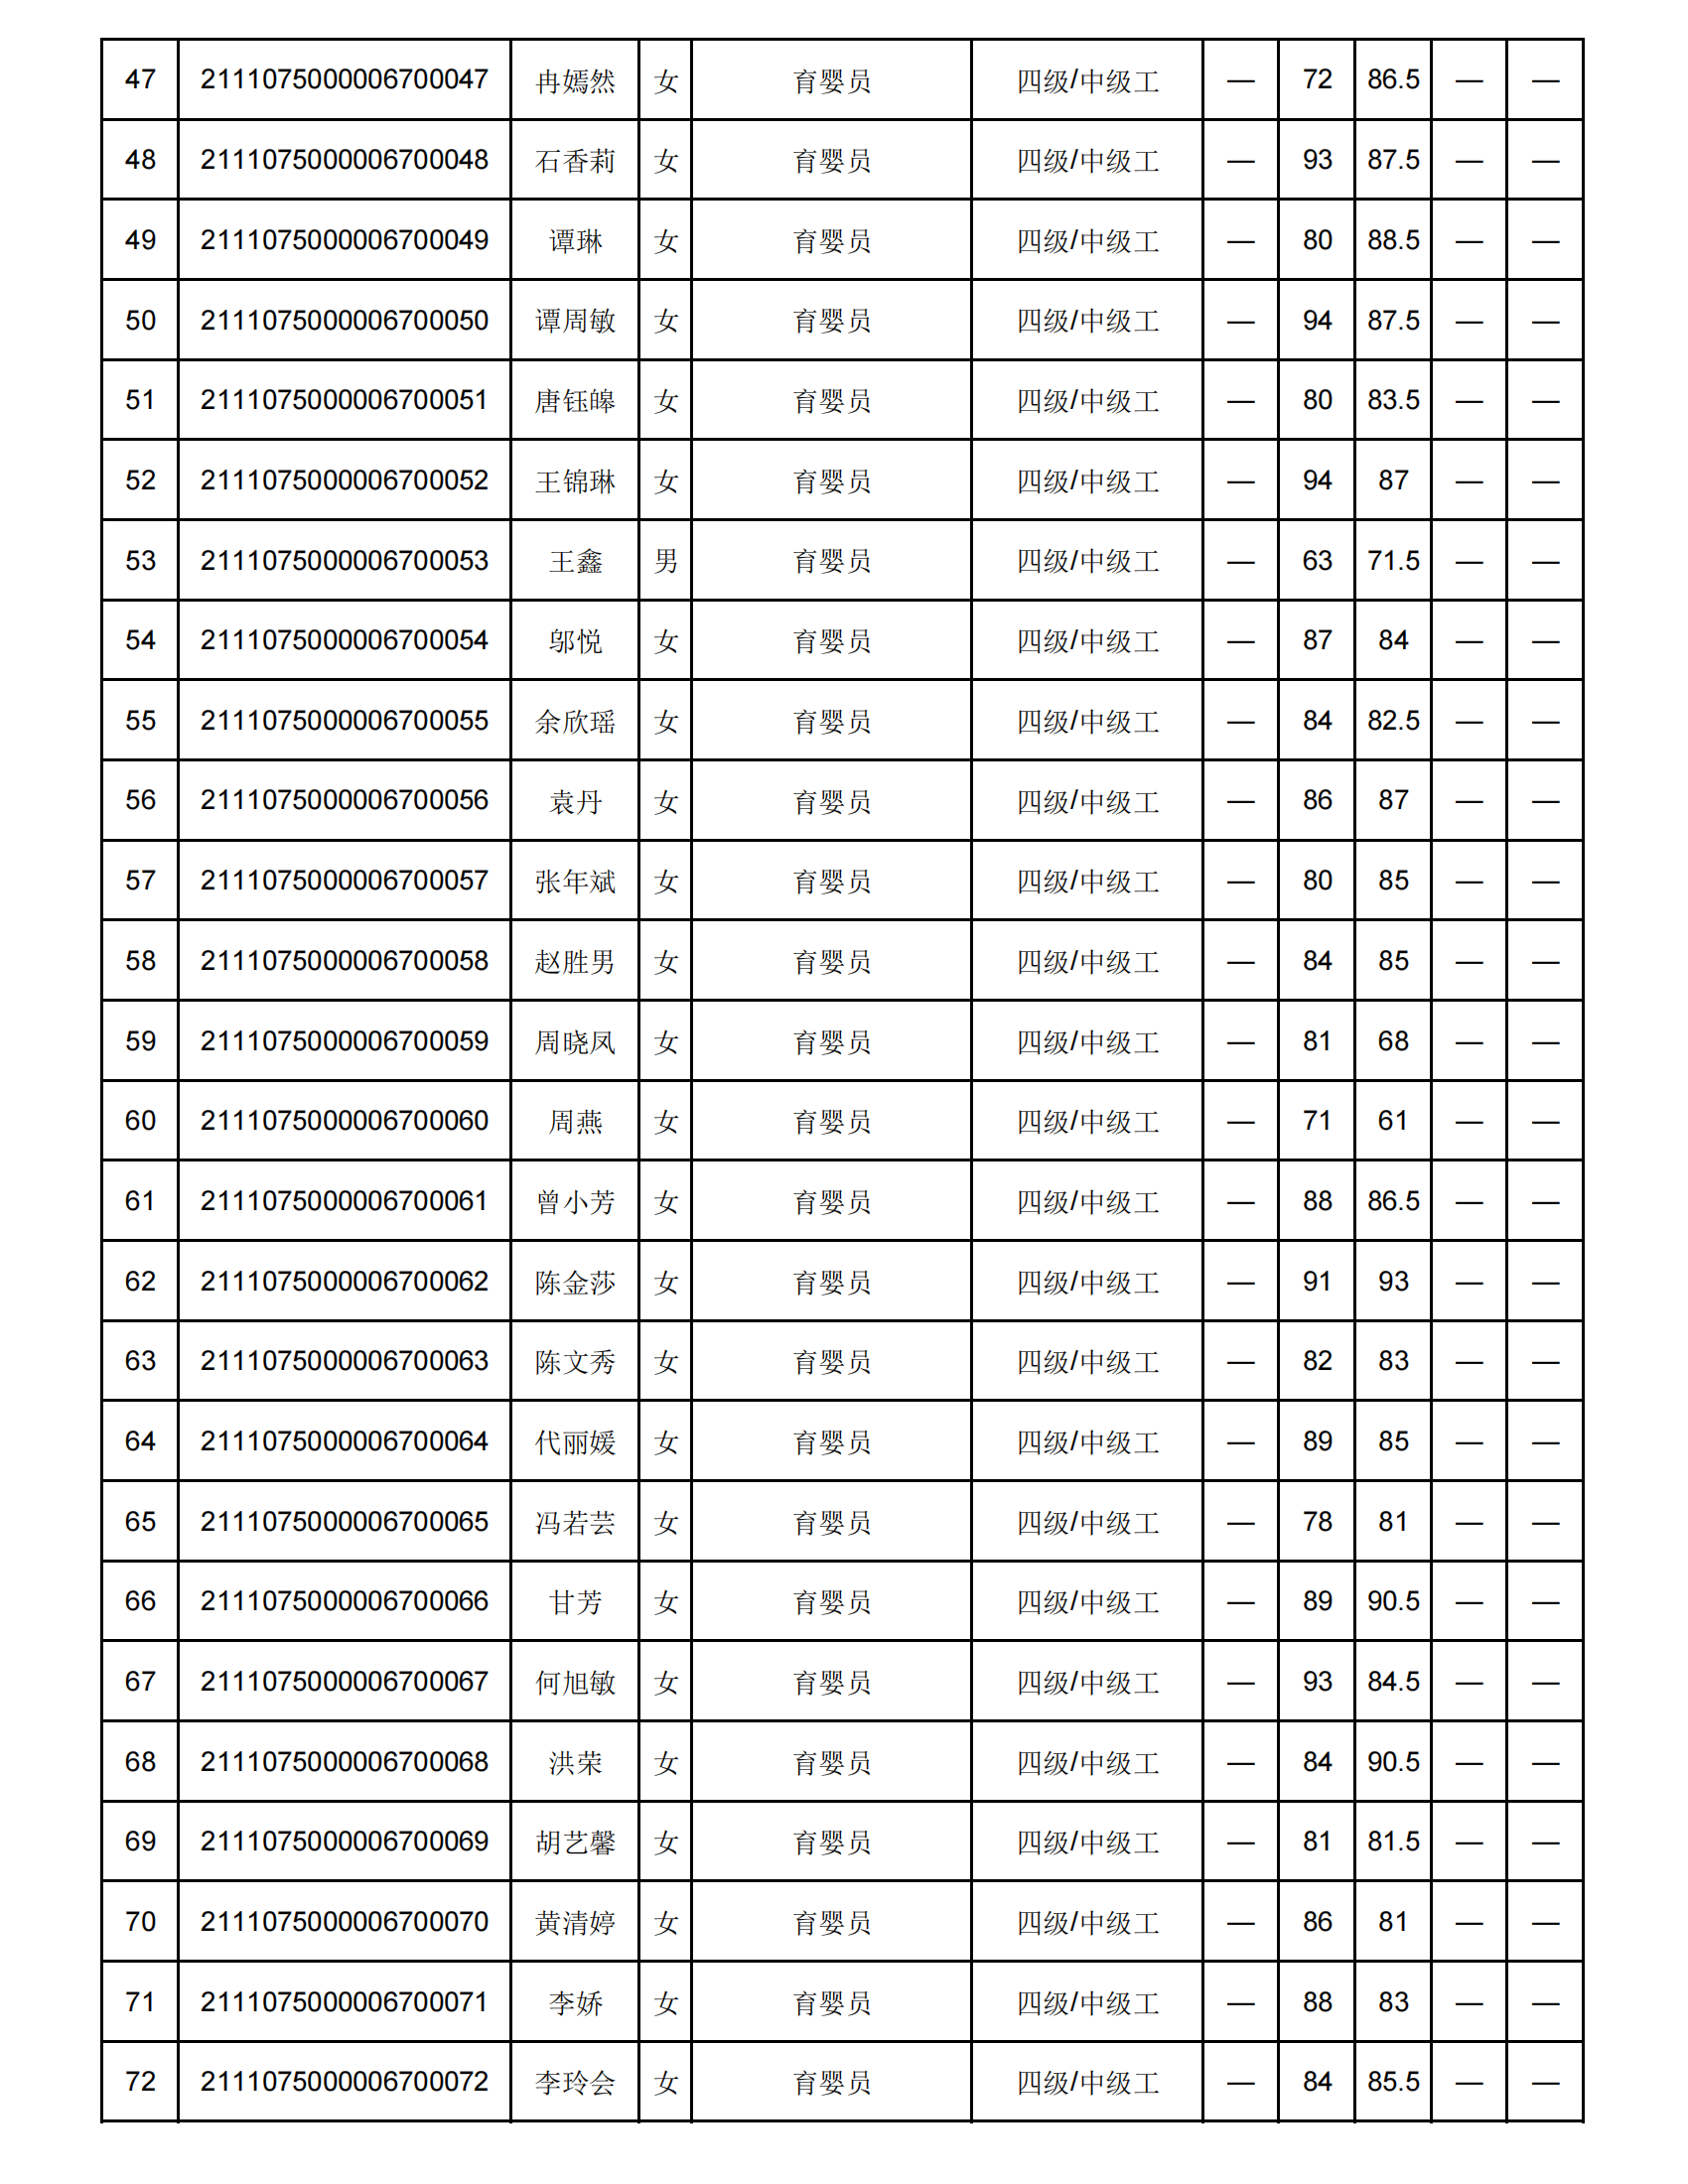 弘一职校第16批职业技能等级认定成绩花名册公示表(1)_02.png